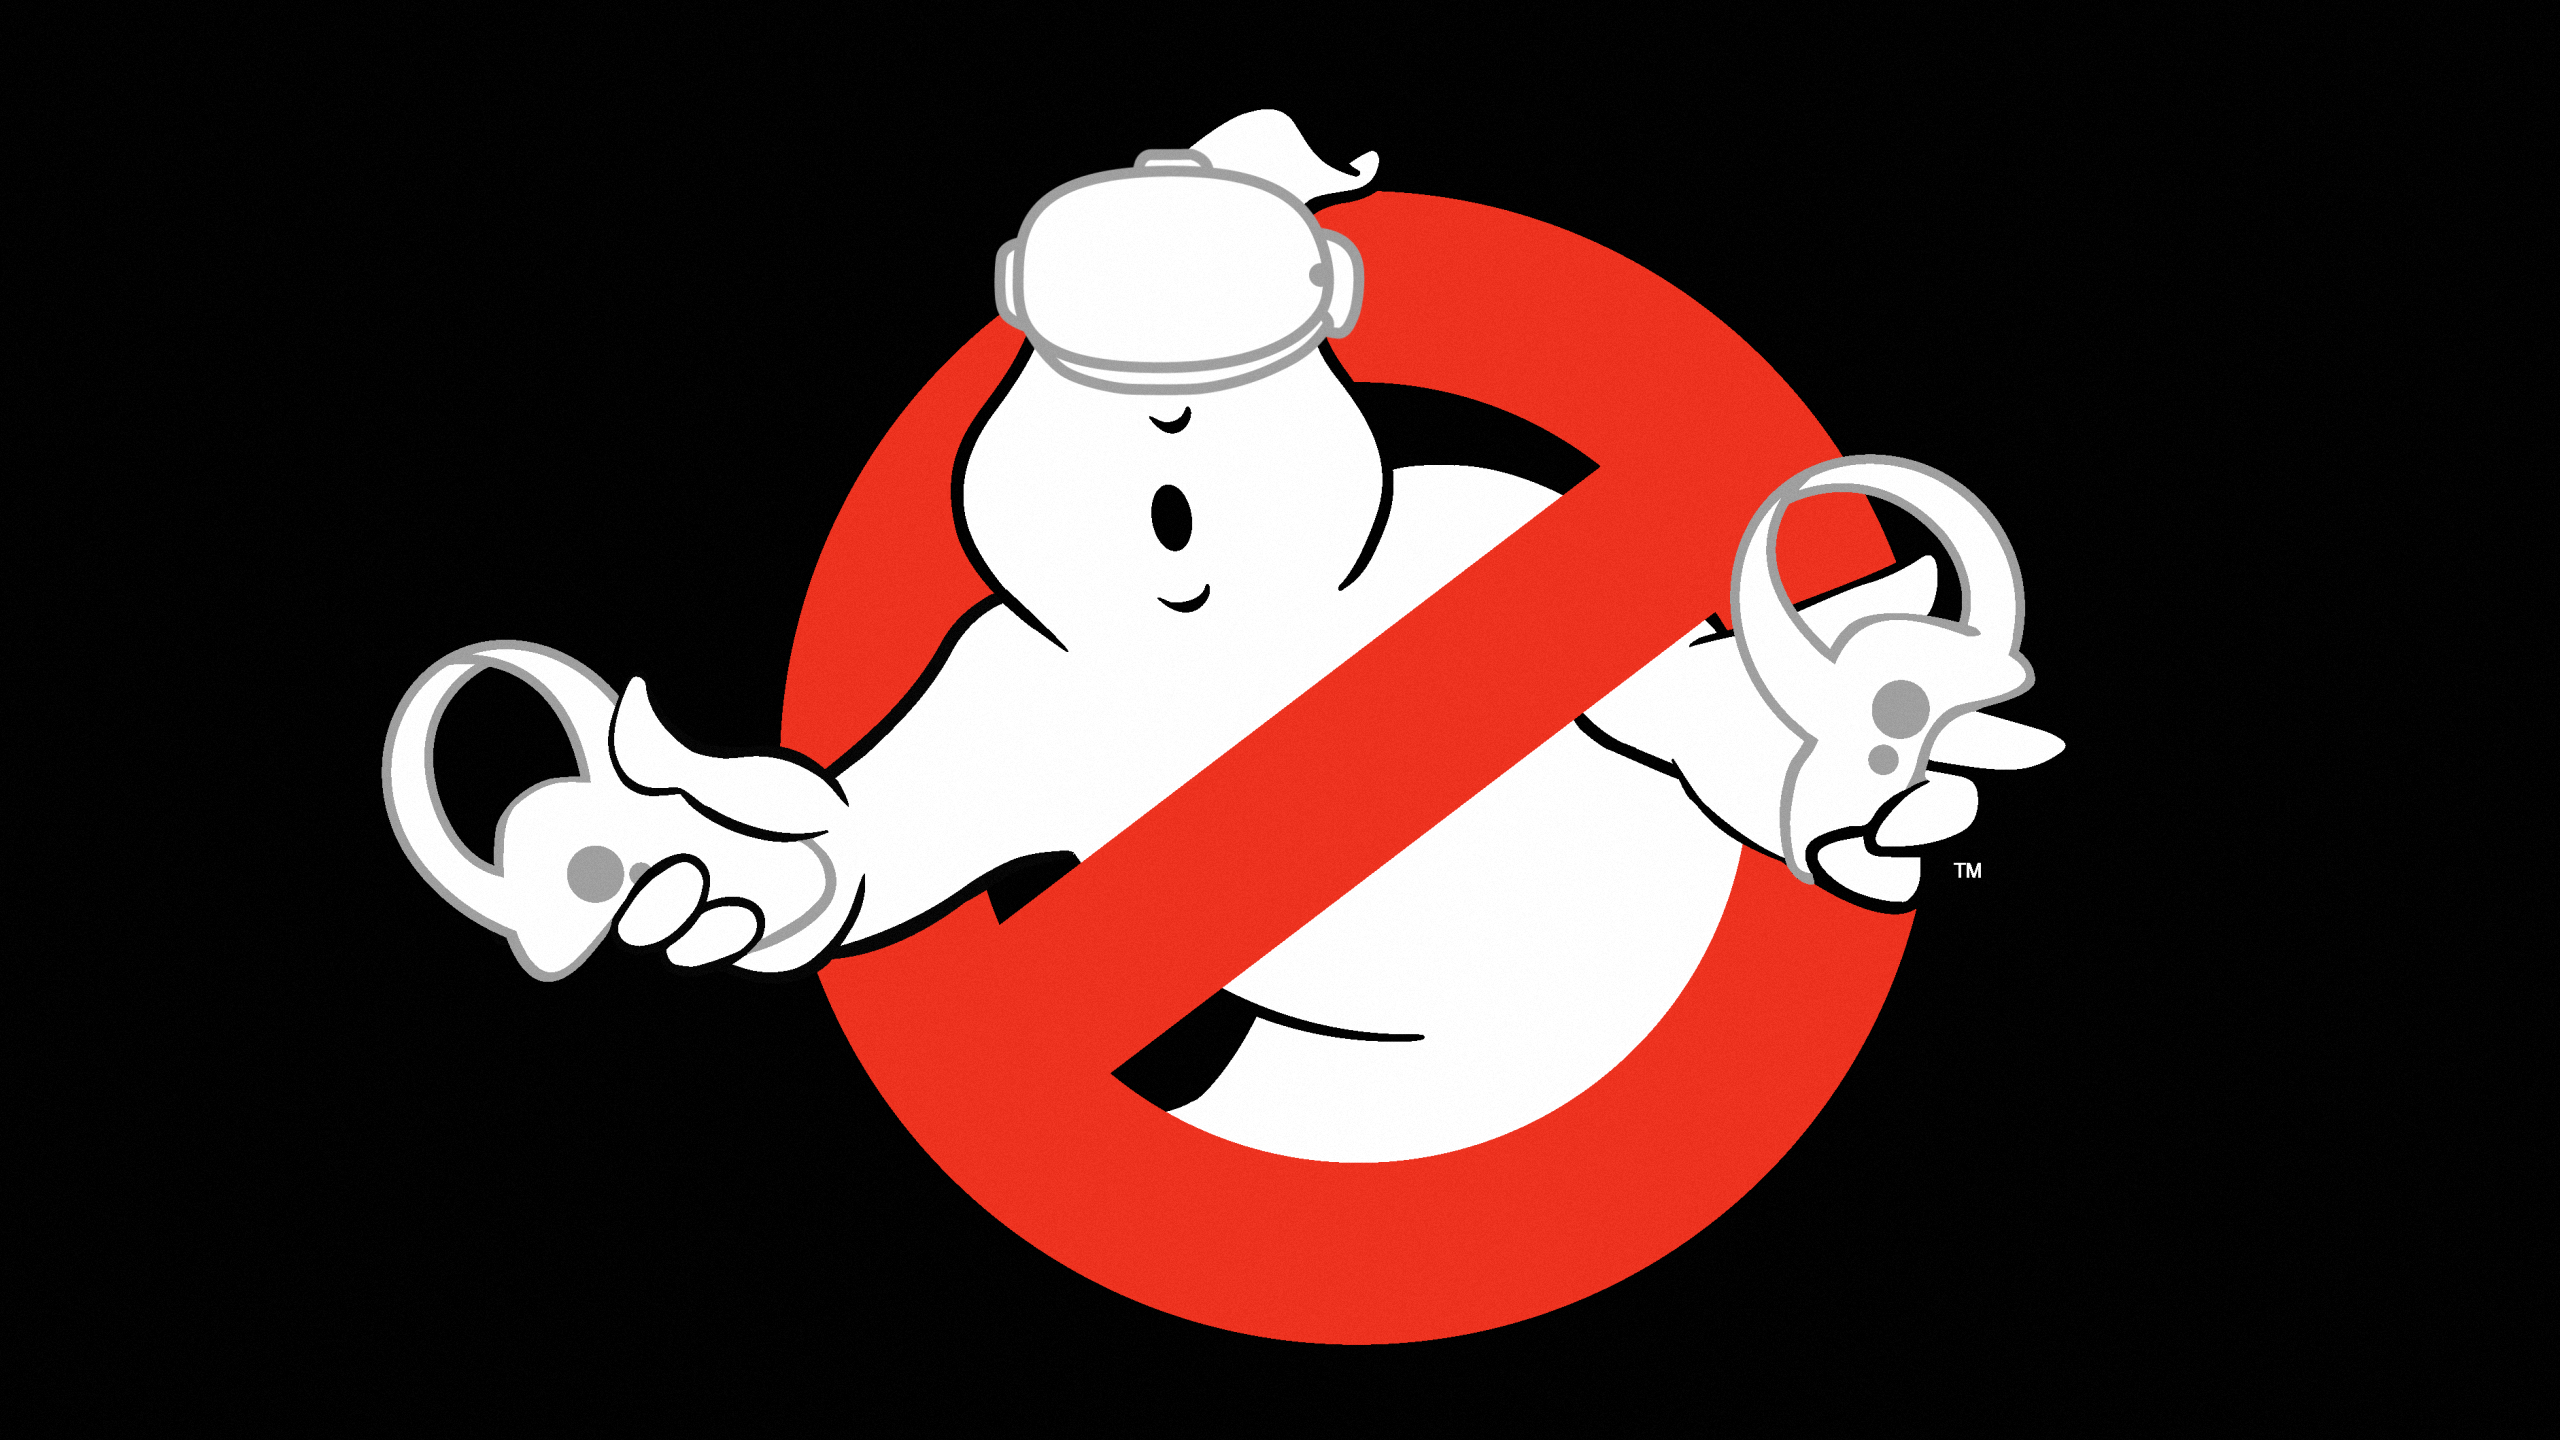 Le nouveau logo Ghostbusters VR - le fantôme porte un Quest 2